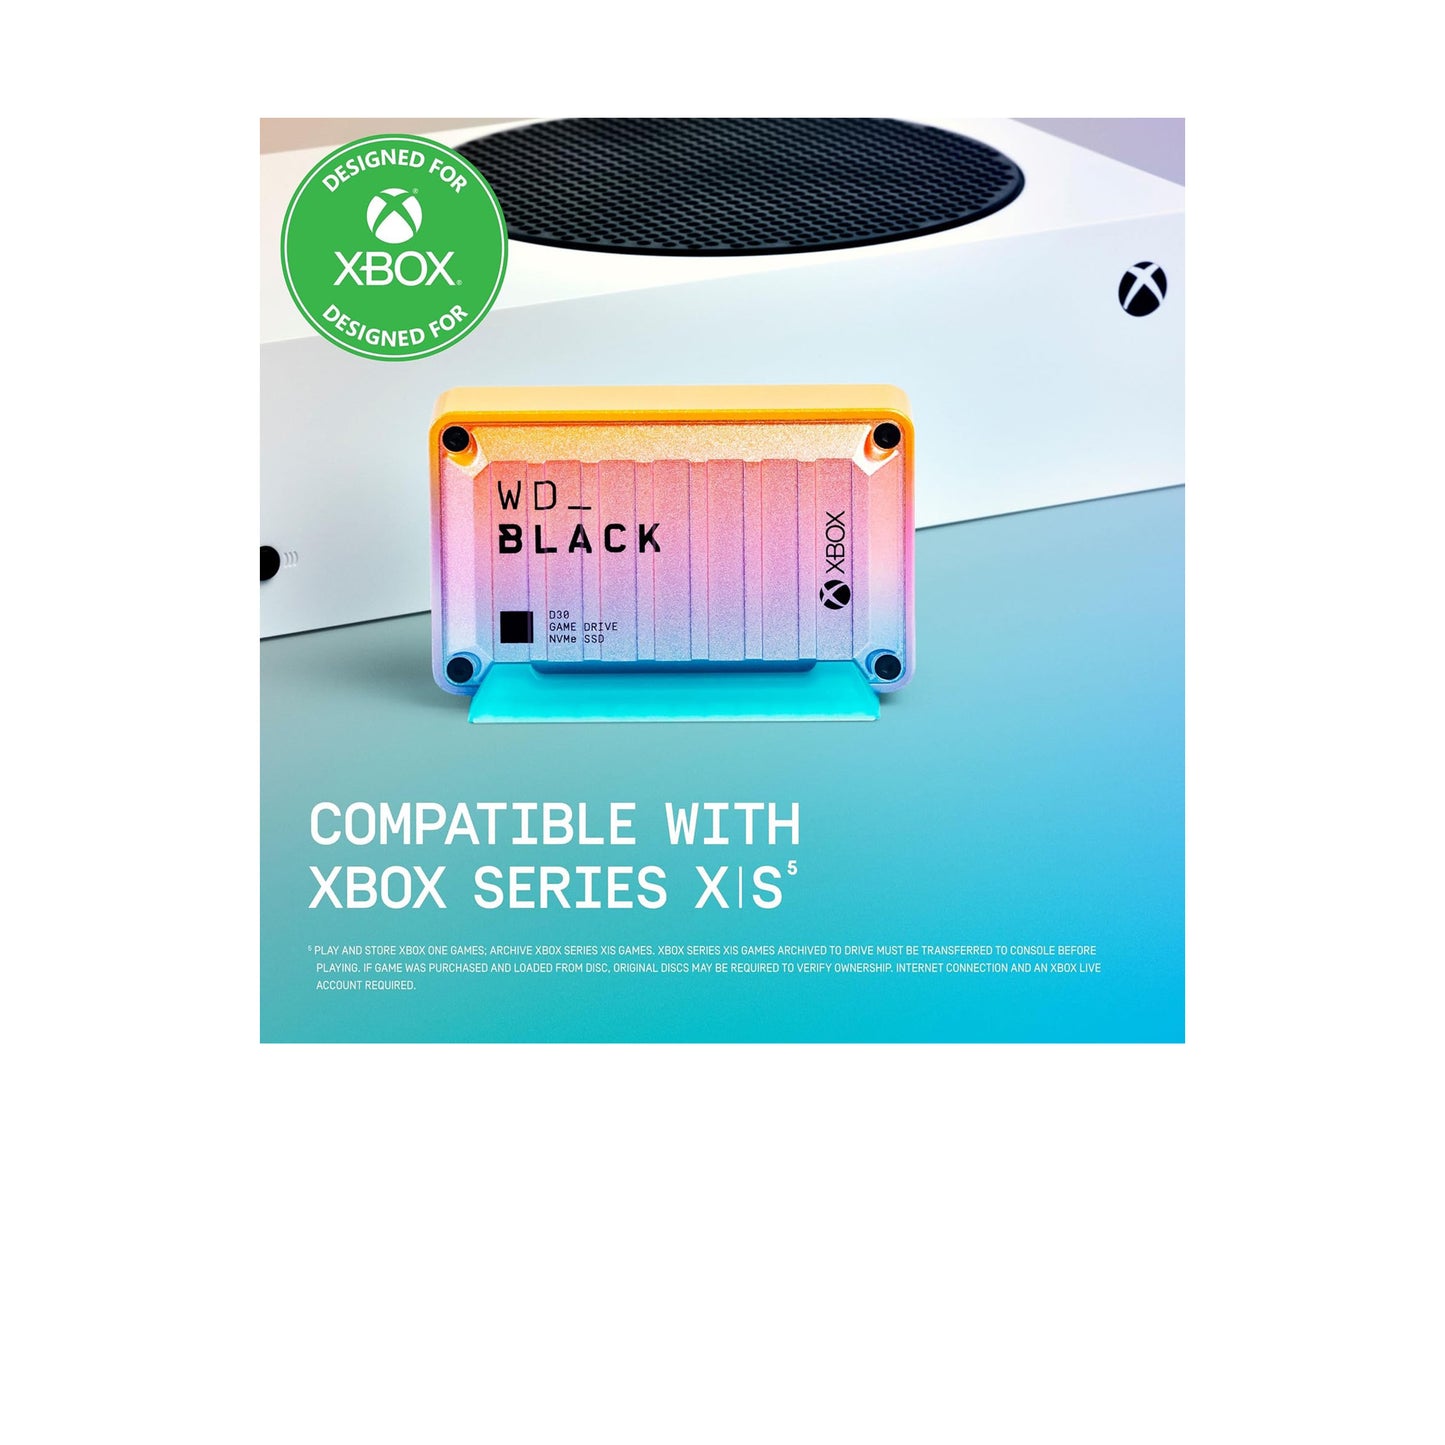 WD_BLACK D30 Game Drive SSD لأجهزة Xbox™ - مجموعة الصيف ذات الإصدار المحدود 